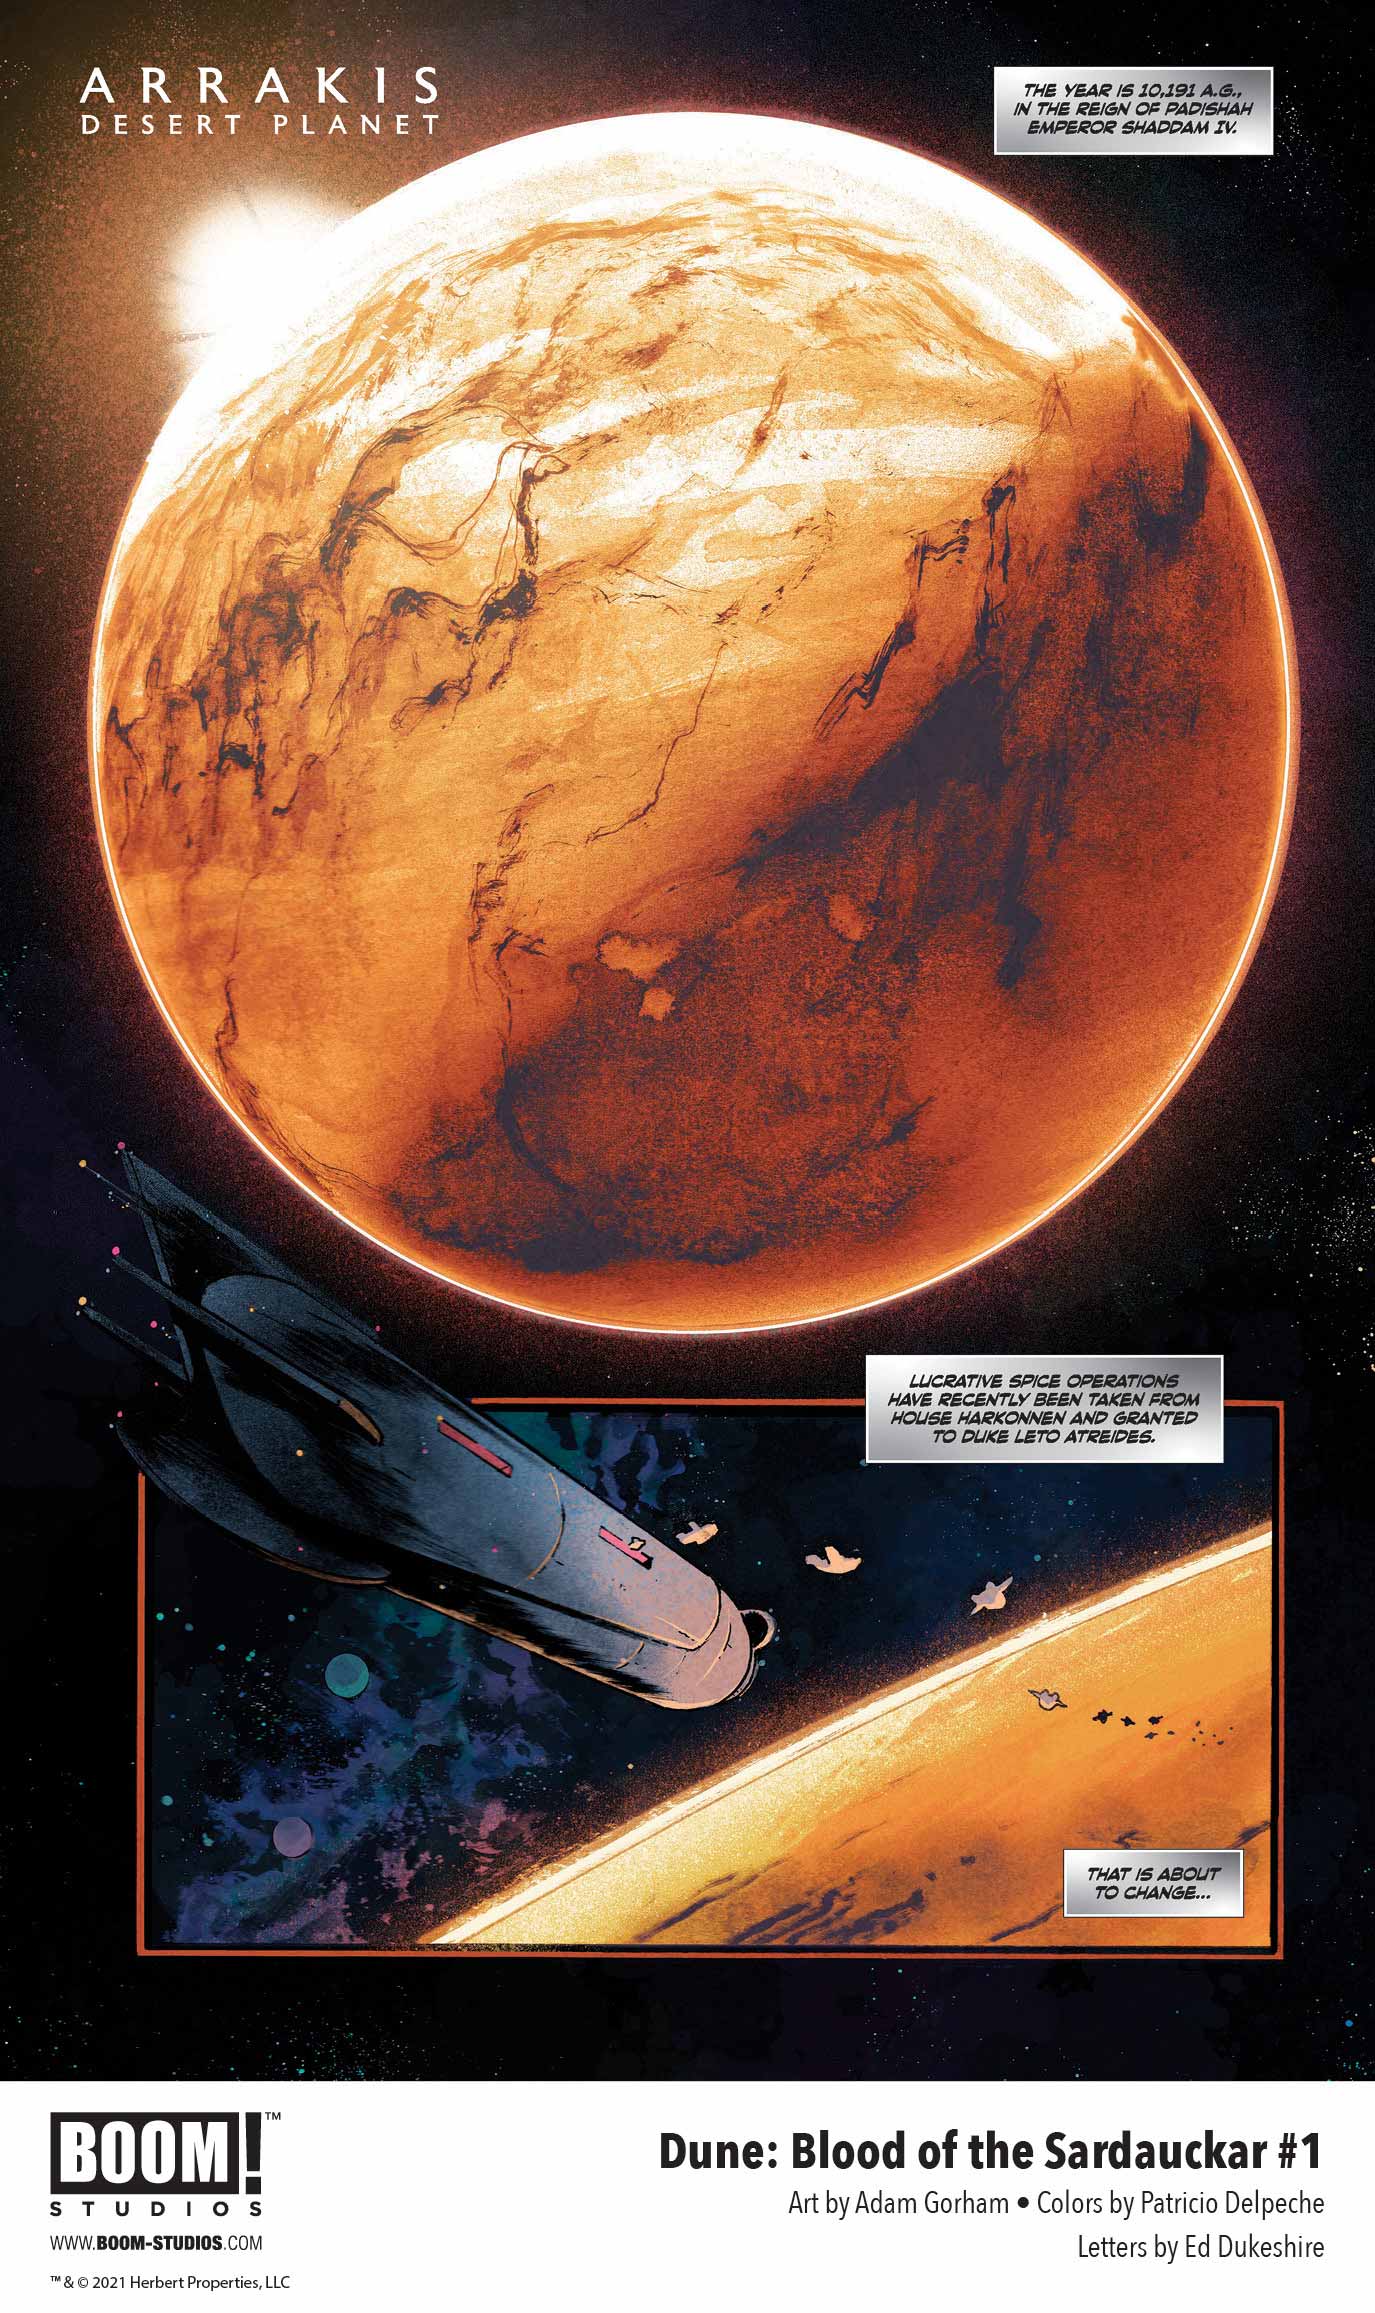 Dune: Blood of the Sardaukar comic book, preview page 1.